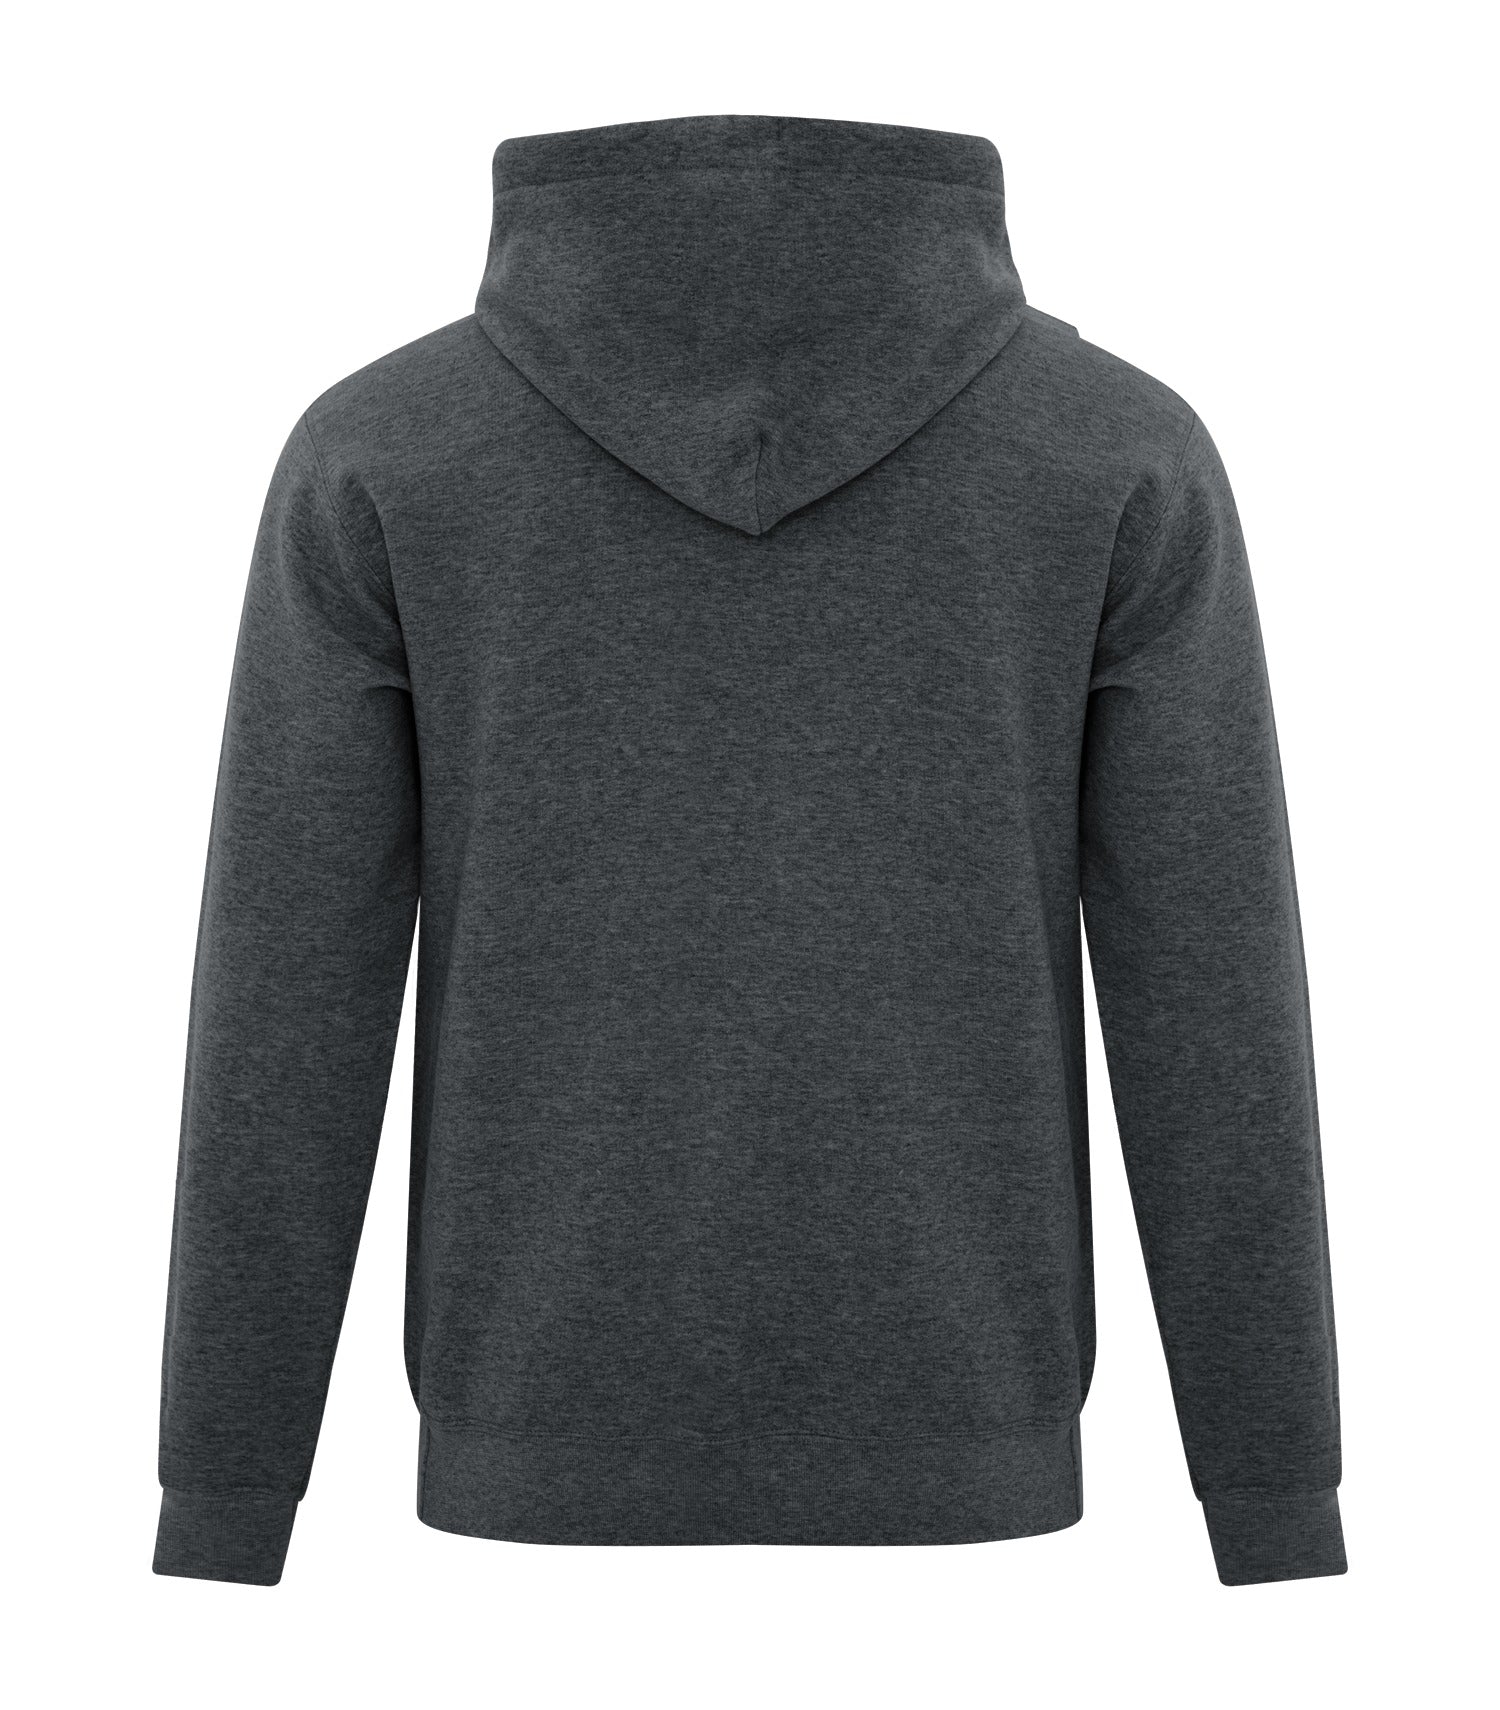 Buy Everyday Fleece Full-Zip Hoodie - Order Hoodies & Sweatshirts